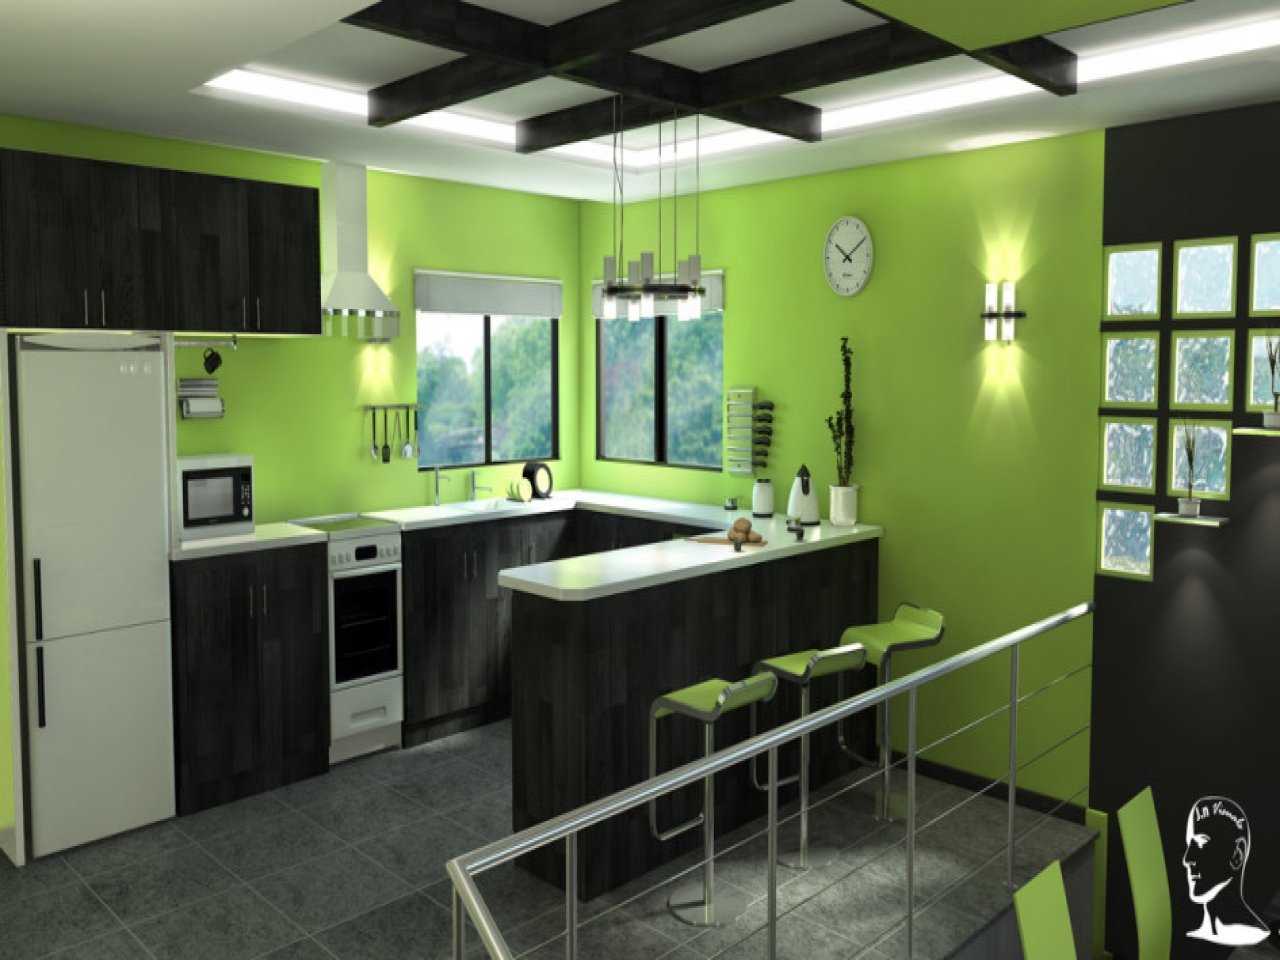 Зеленый цвет в интерьере кухни 130 Фото помогает создать спокойное настроение С какими цветами сочетать и как организовать функциональное пространство